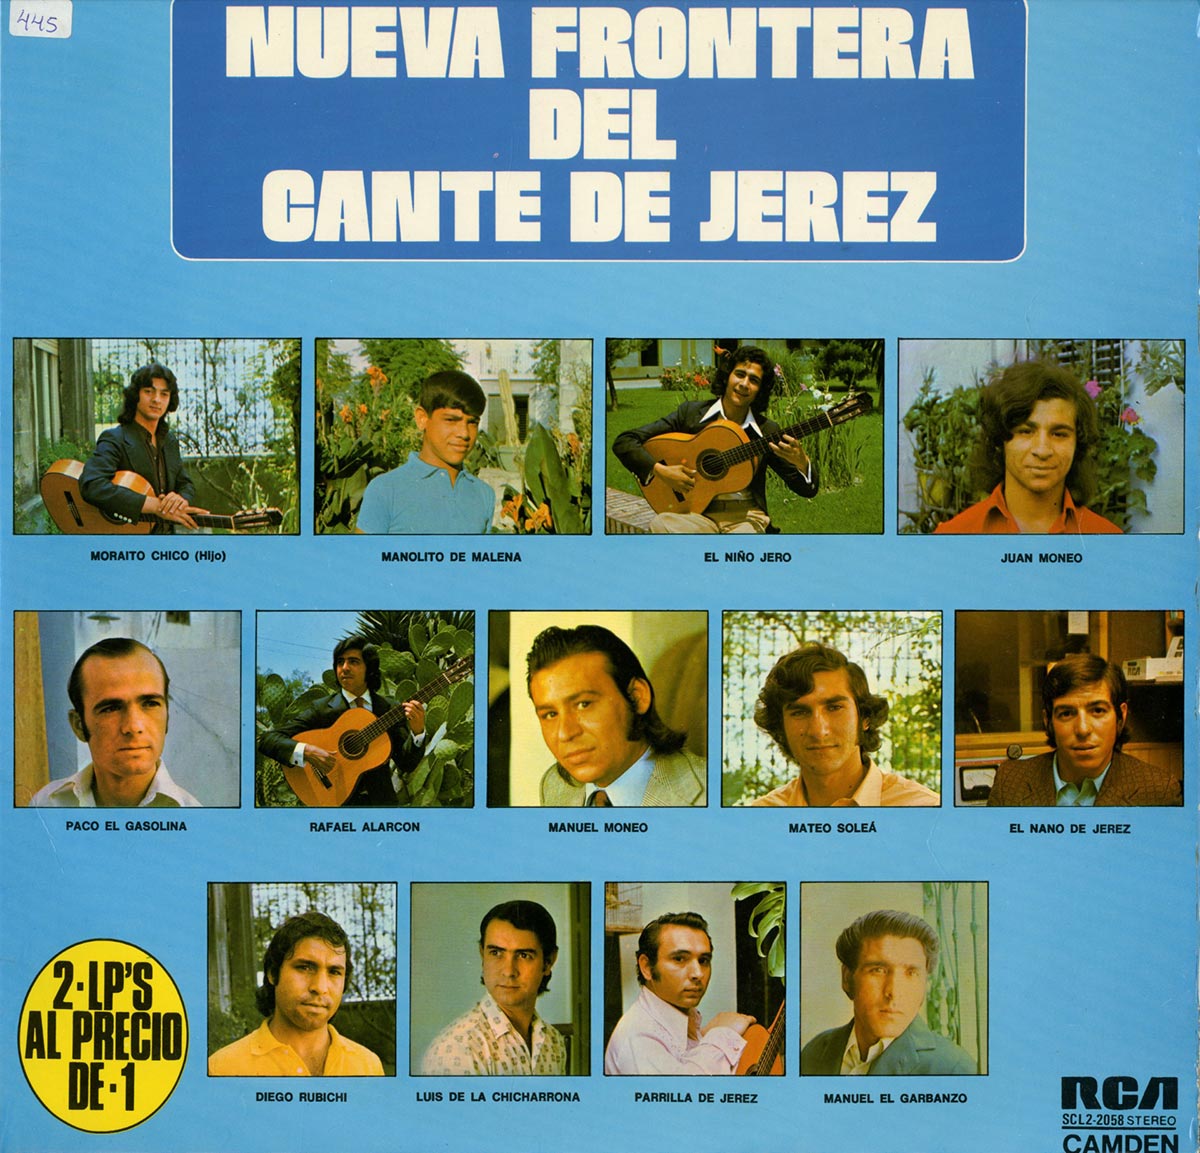 La Cátedra conmemora el 50 aniversario del disco “Nueva Frontera del Cante de Jerez”